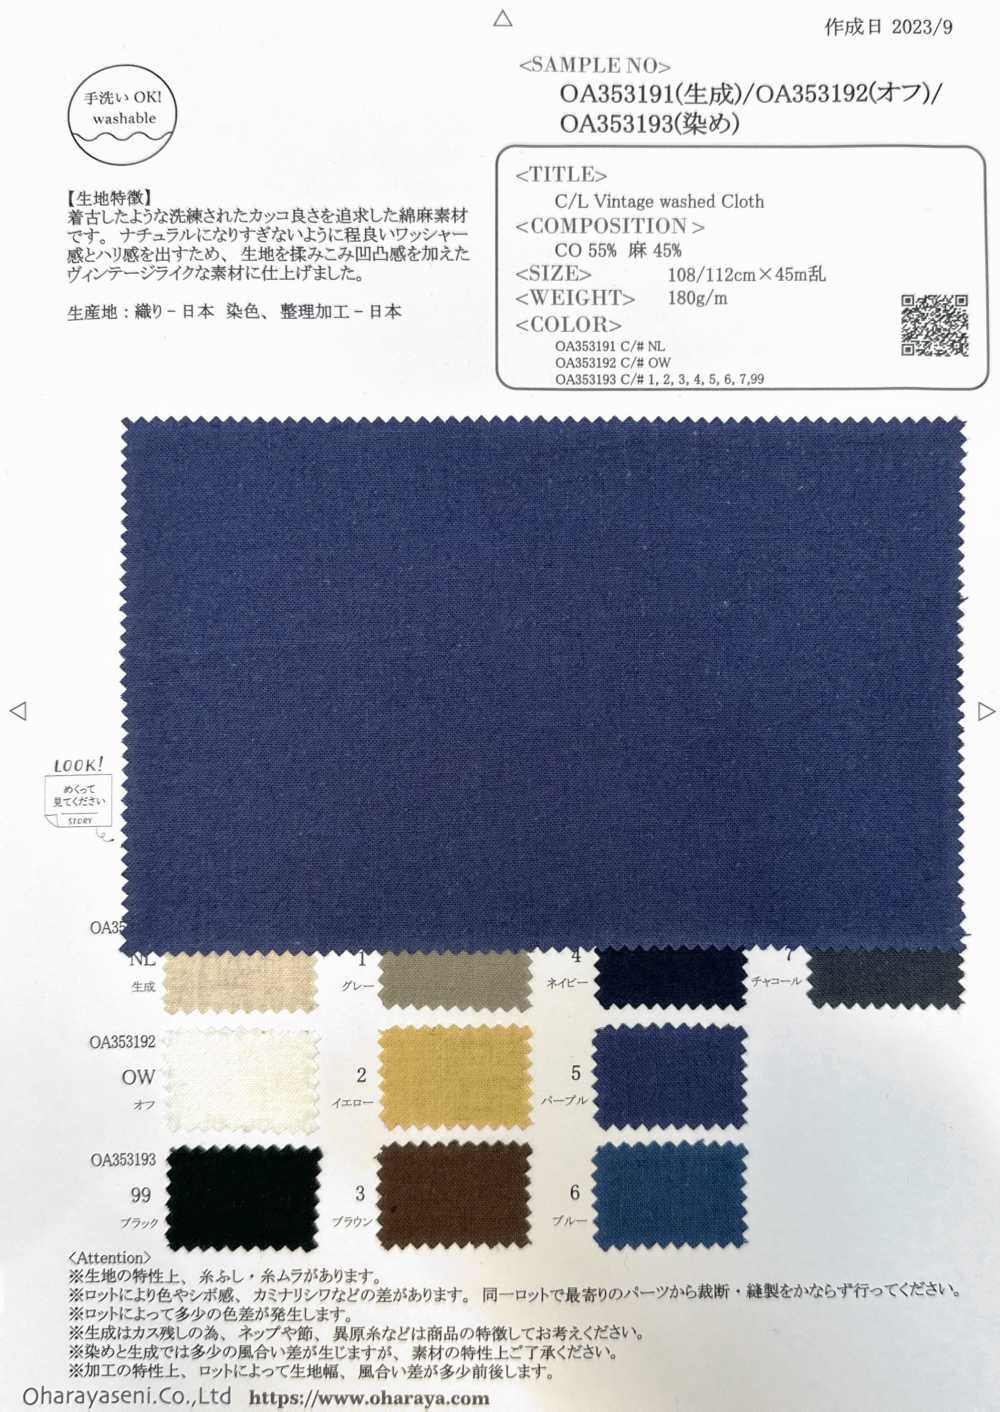 OA353193 Tissu Lavé Vintage C/L[Fabrication De Textile] Oharayaseni